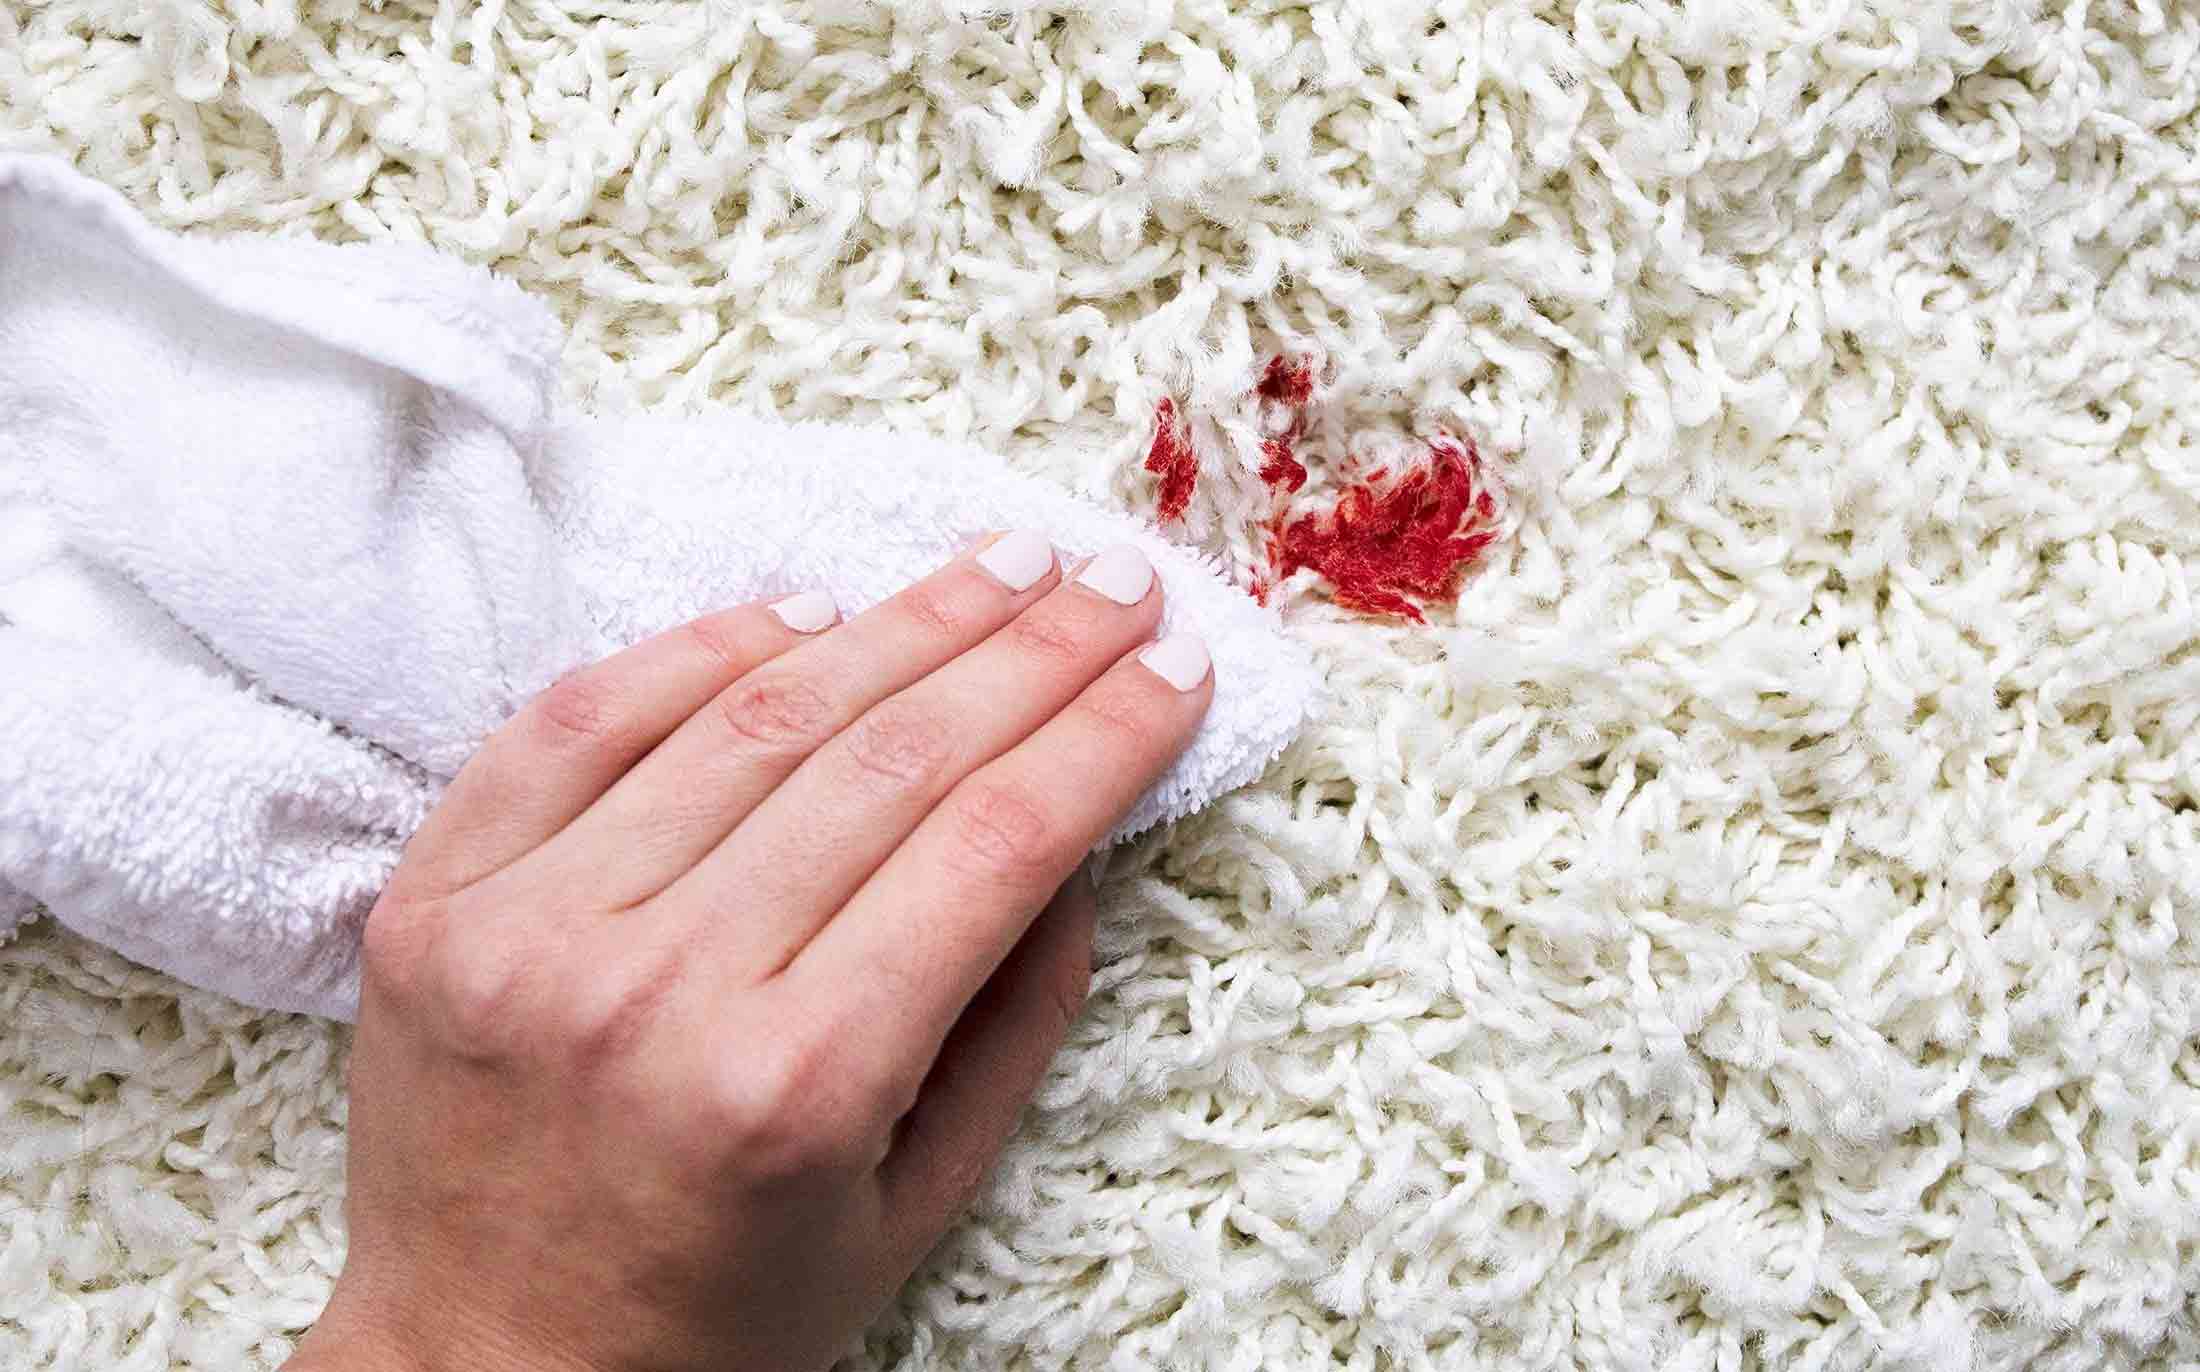 پاک کردن لکه های قدیمی از روی فرش - قالیشویی آوا